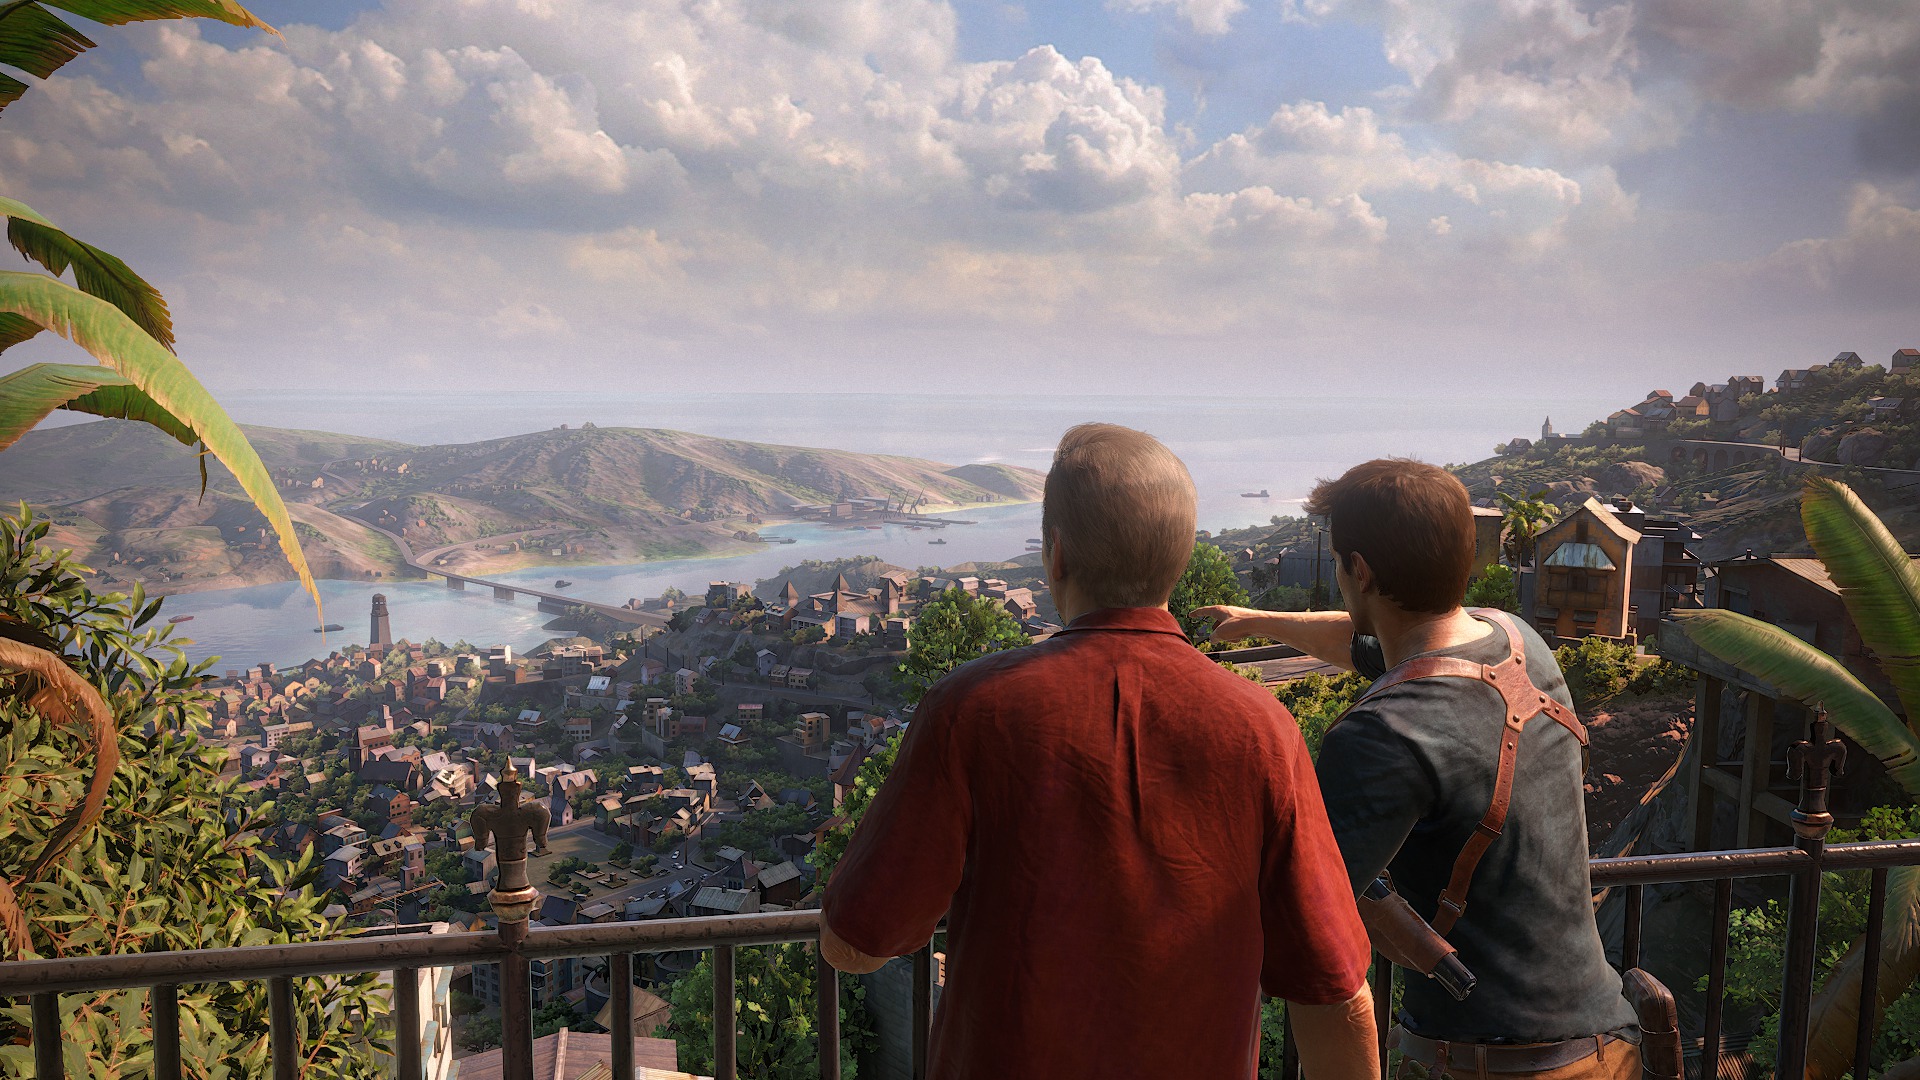 Uncharted 4: veja Drake e Sam na demo que 'termina' aventura da E3